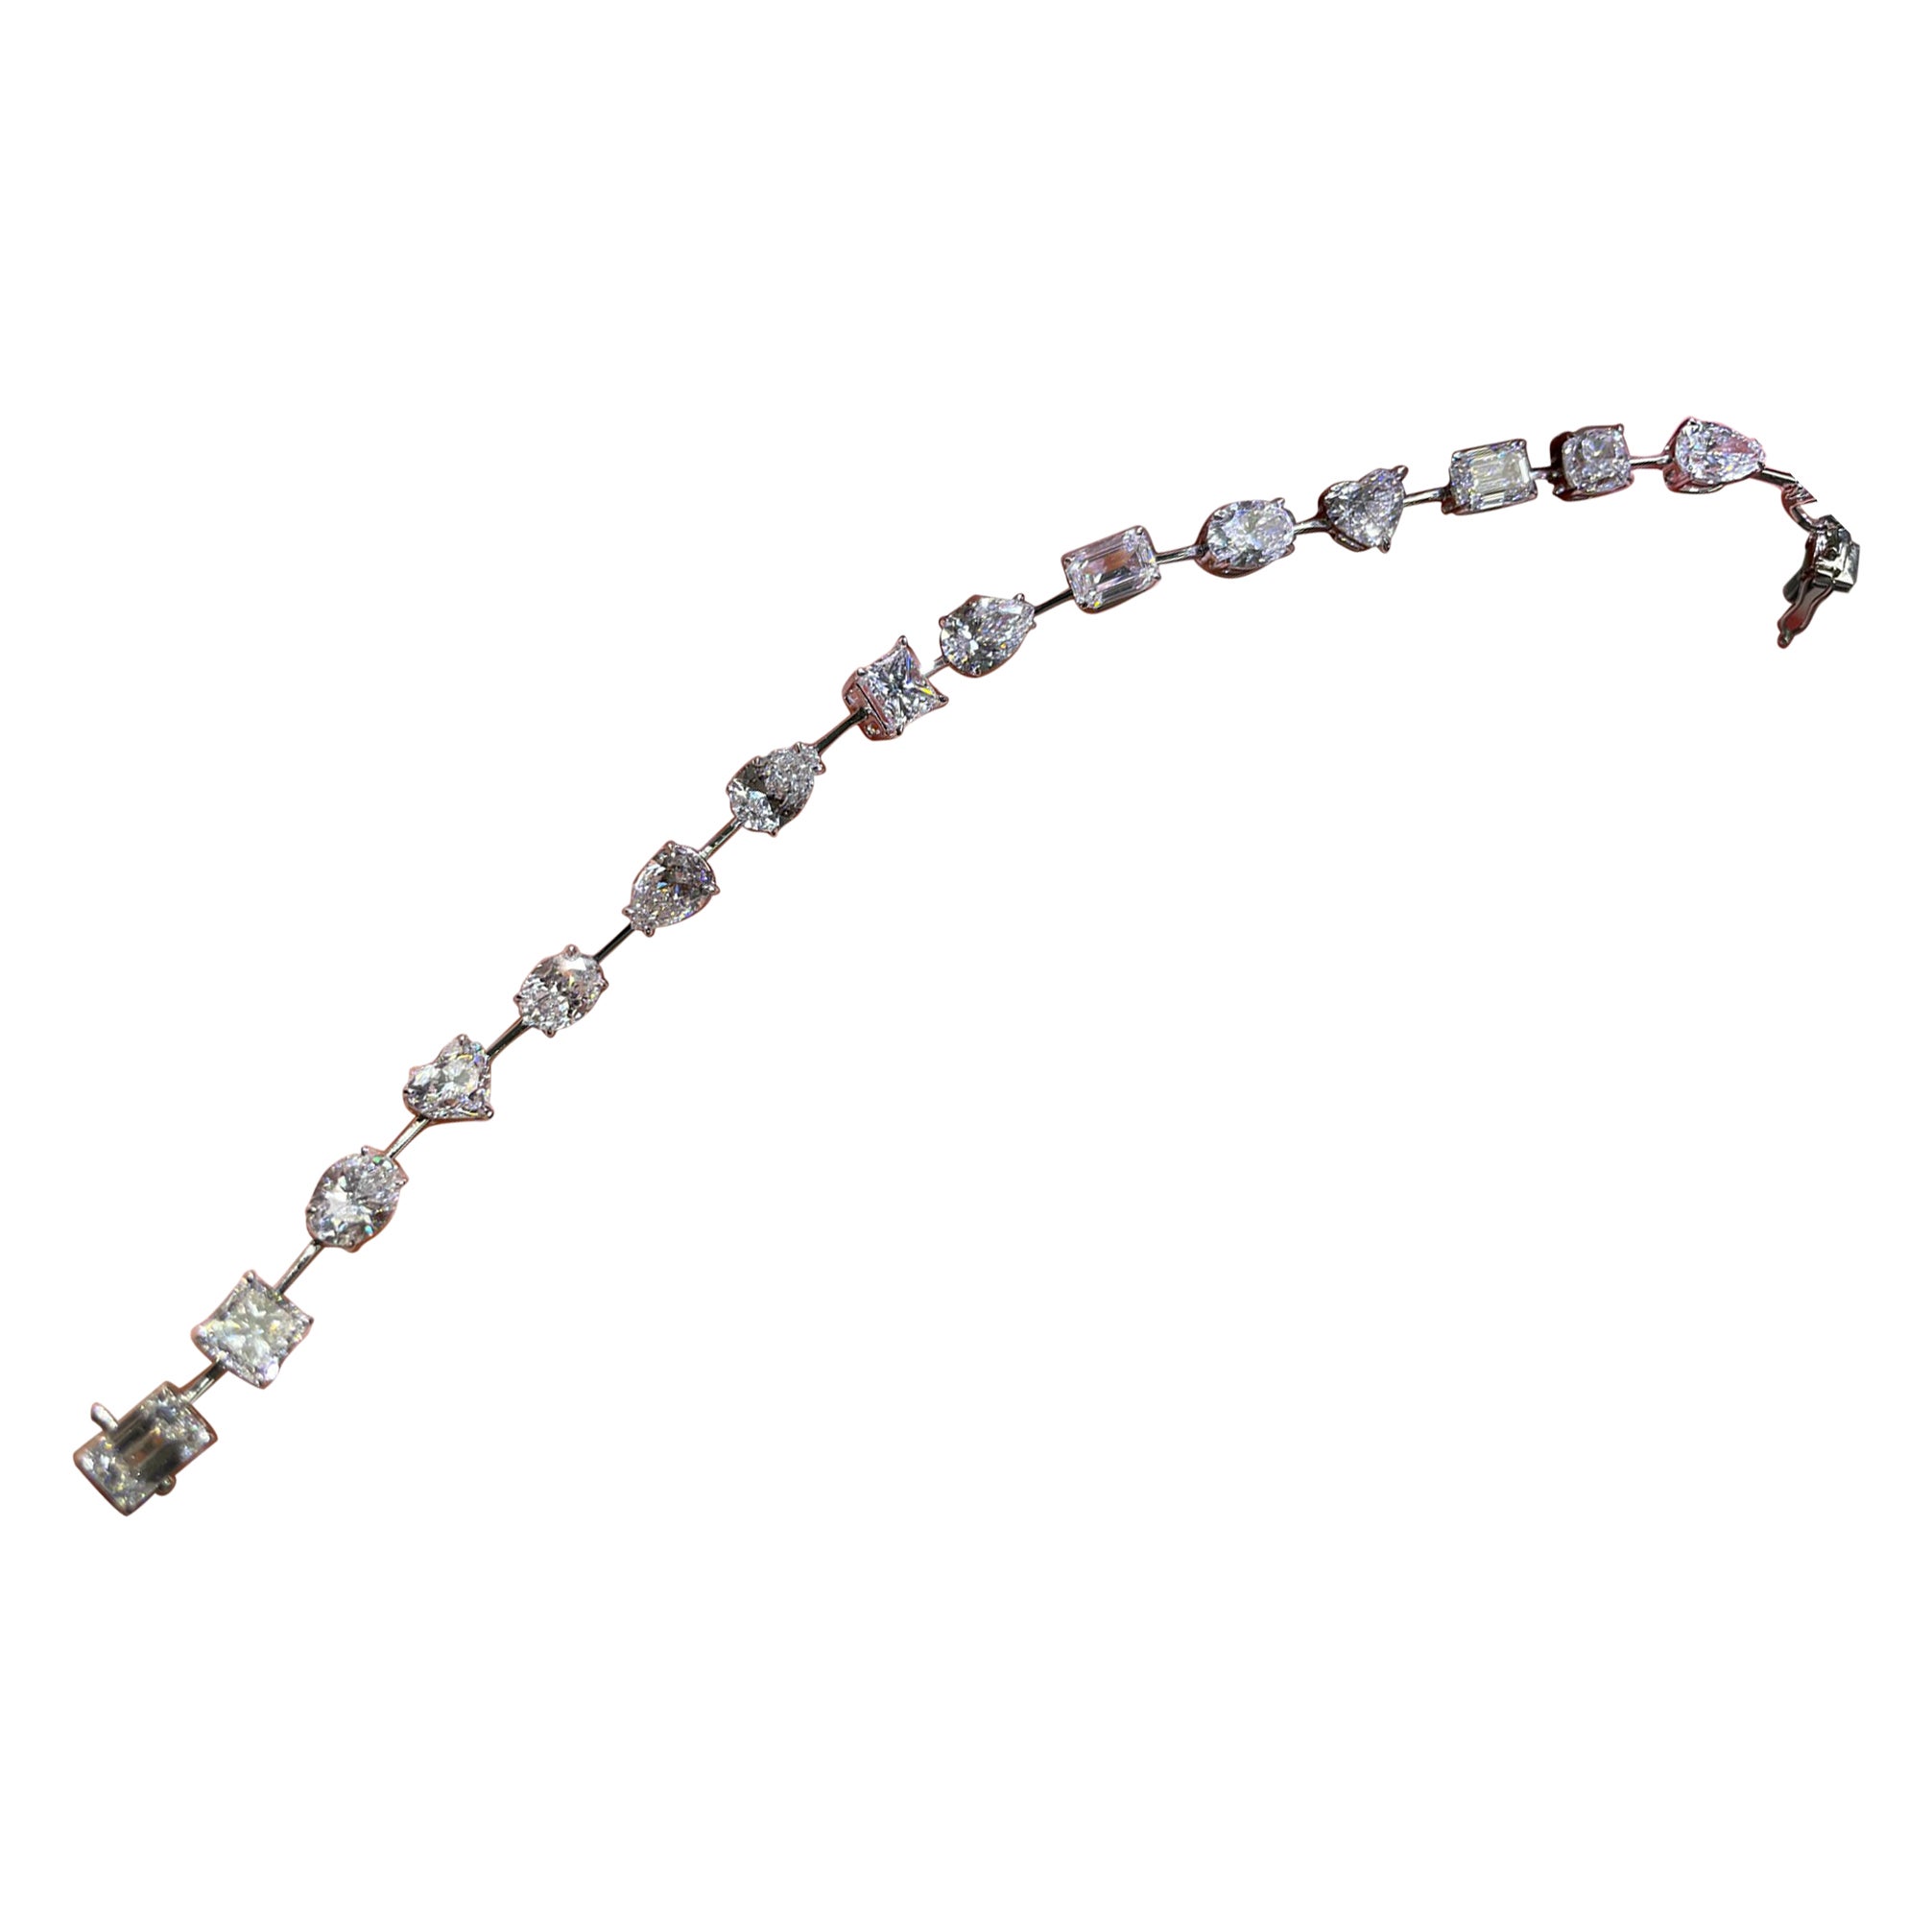 Bracelet tennis en diamants de forme mixte de 11,3 carats certifiés GIA, de couleur D/E/F 